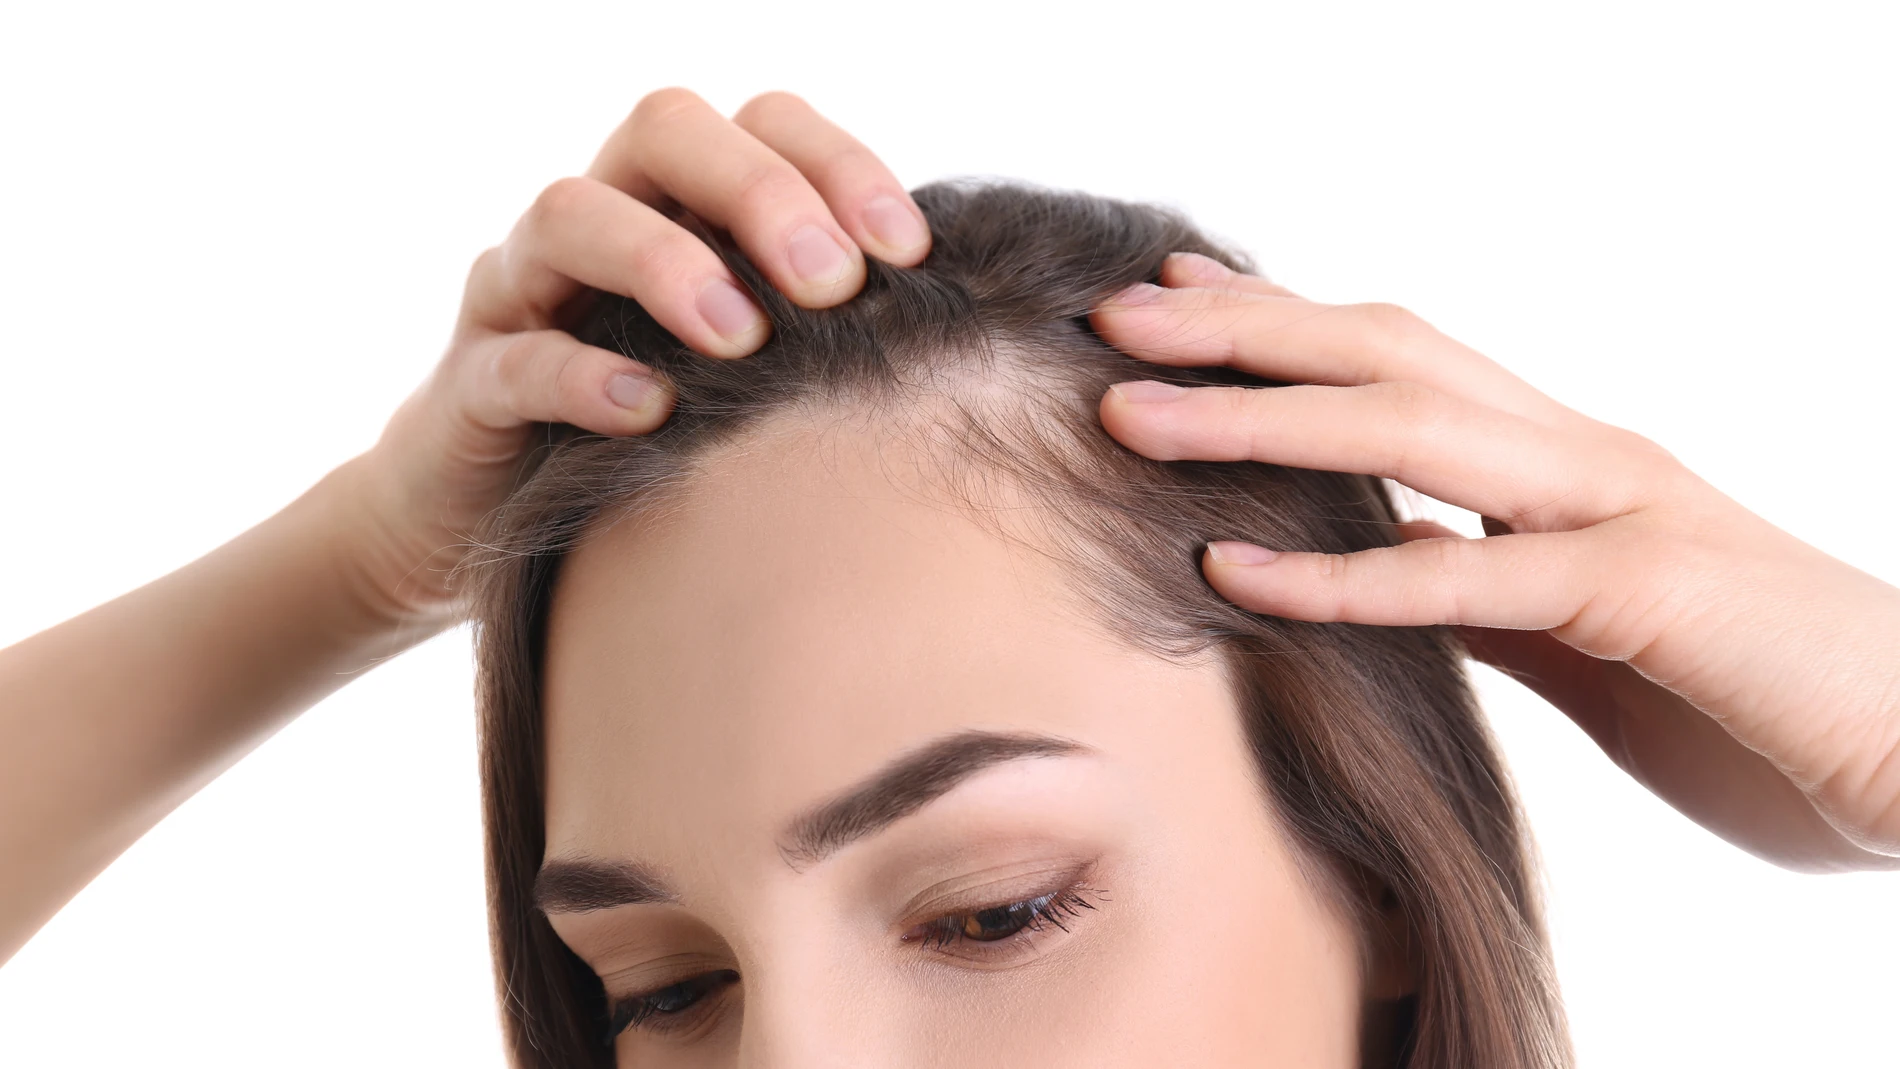 El efluvio telógeno es una de las causas más frecuentes de alopecia